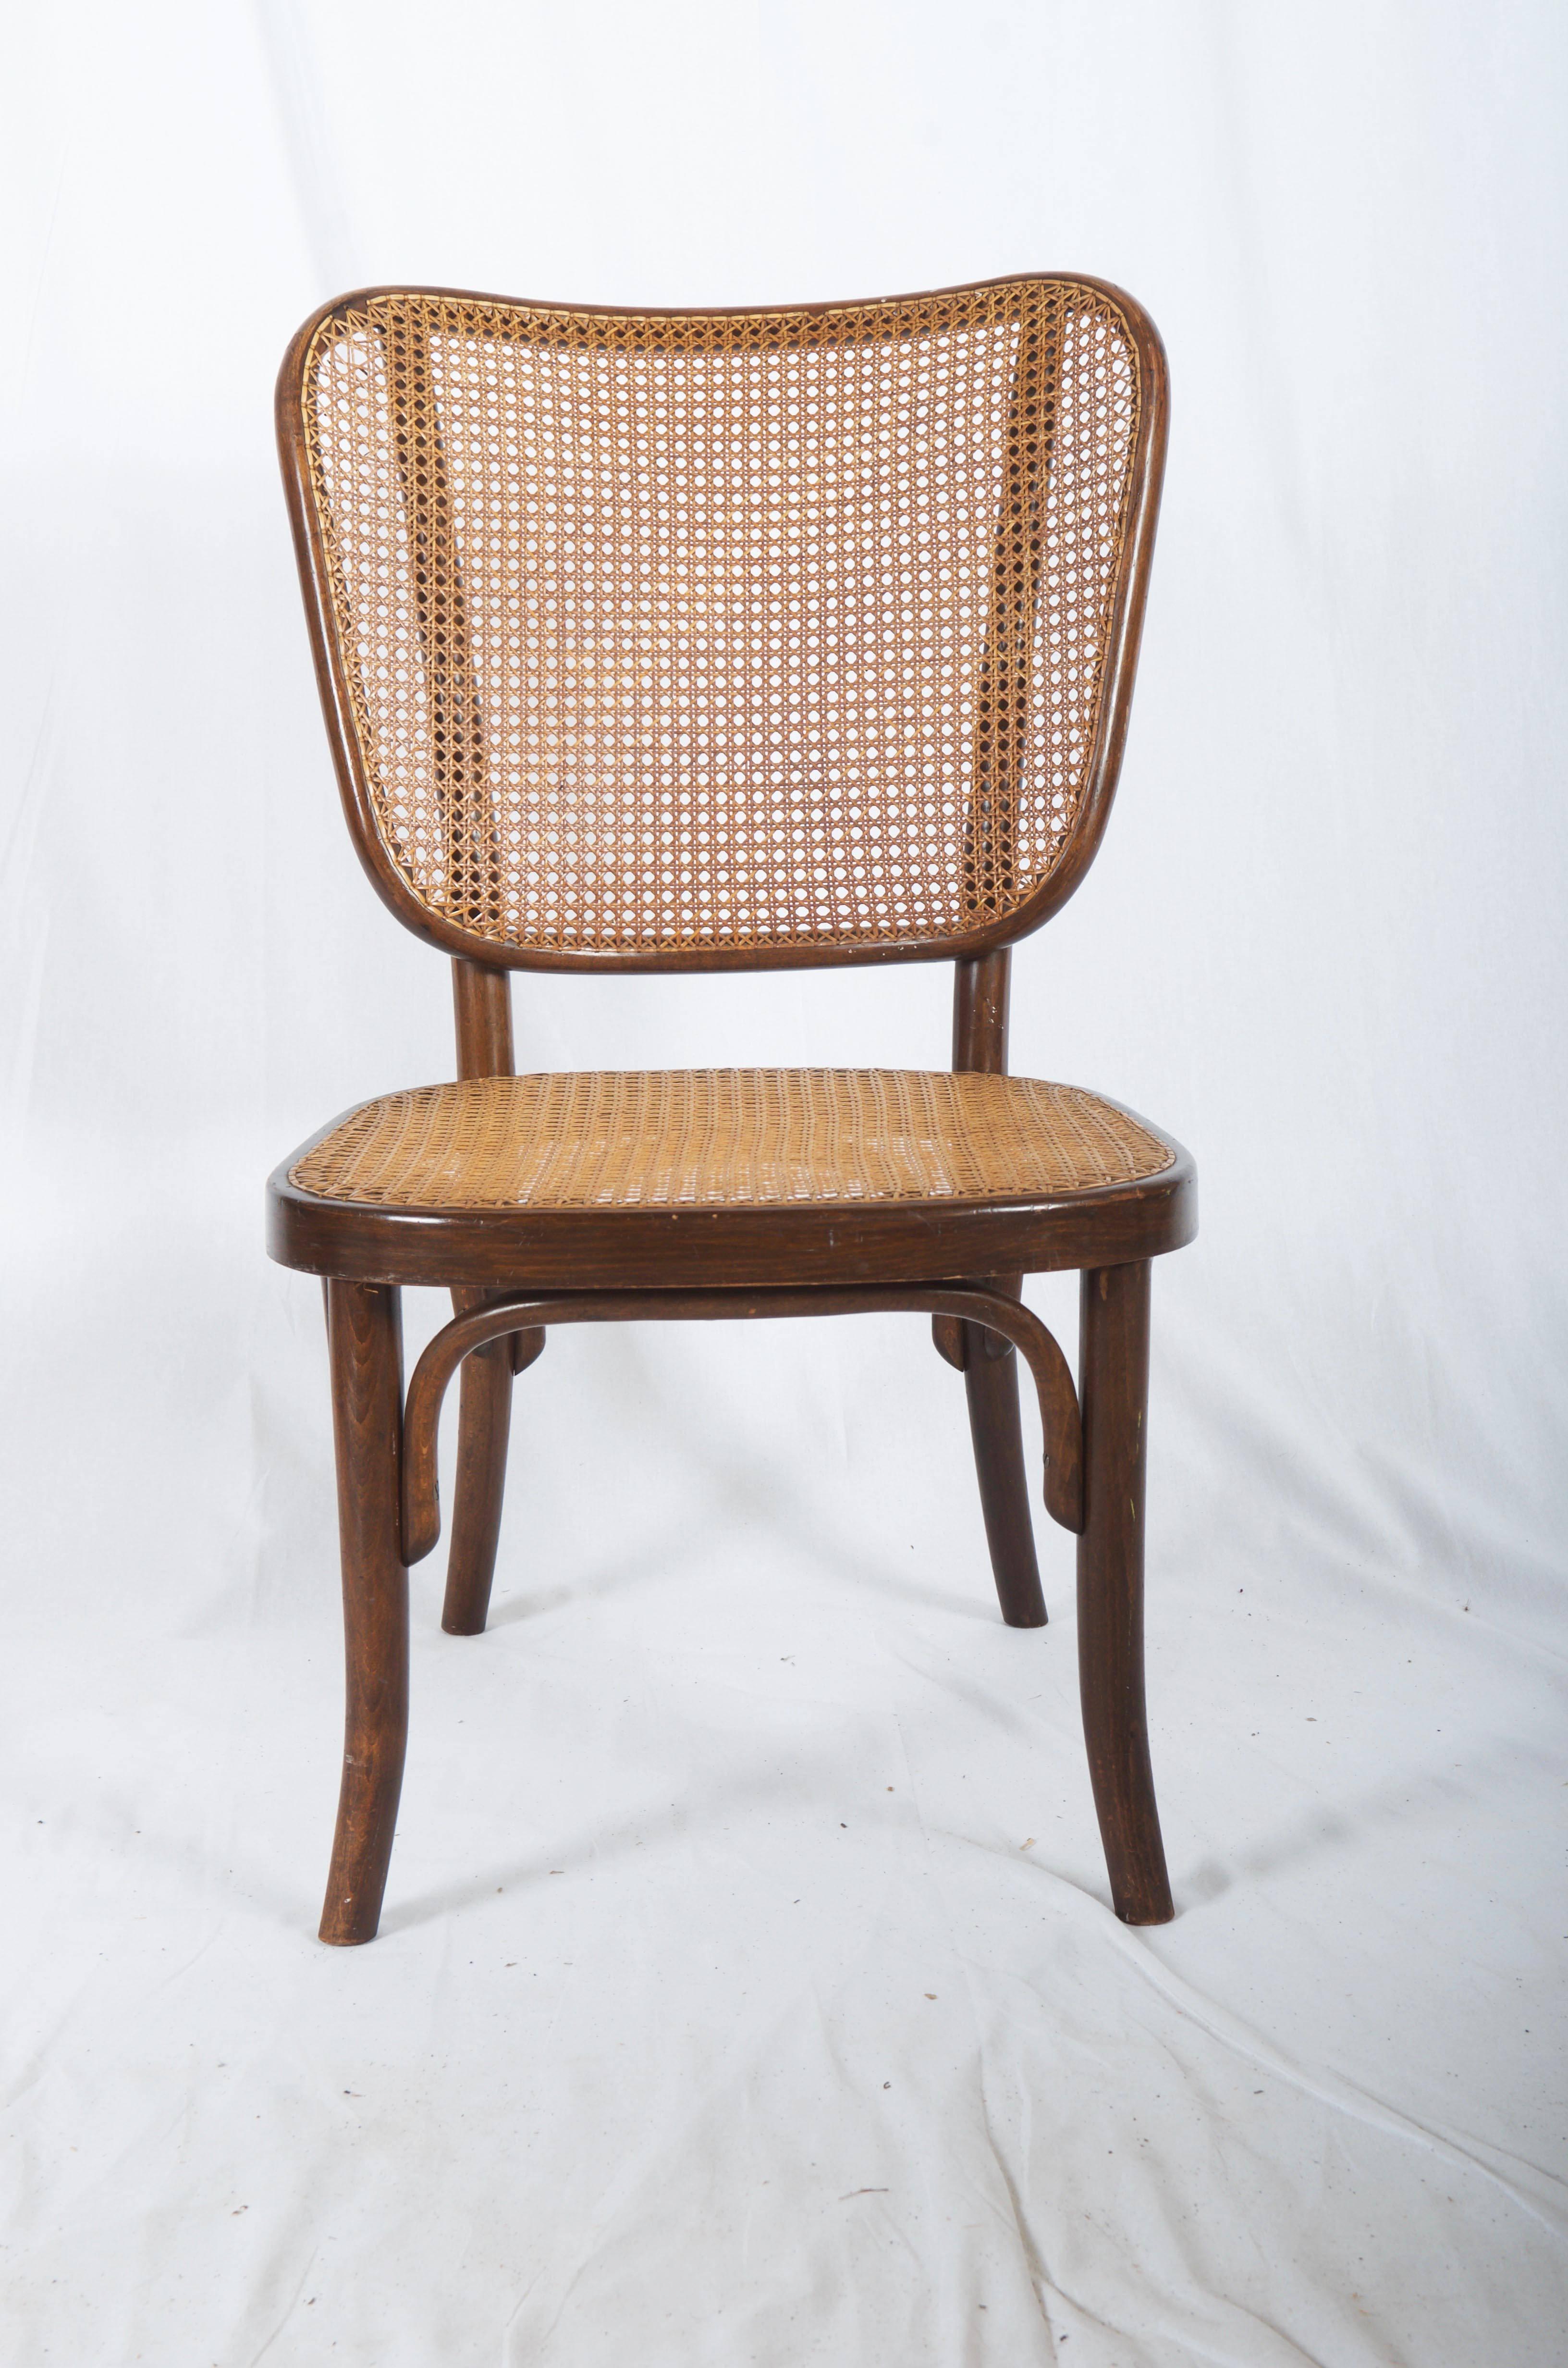 Sitz und Rückenlehne aus Bugholz mit Rohrgeflecht, entworfen von Gustav Adolf Schneck und hergestellt von Thonet in den späten 1930er Jahren. Perfekter unrestaurierter Originalzustand. Signiert auf dem Rahmen.